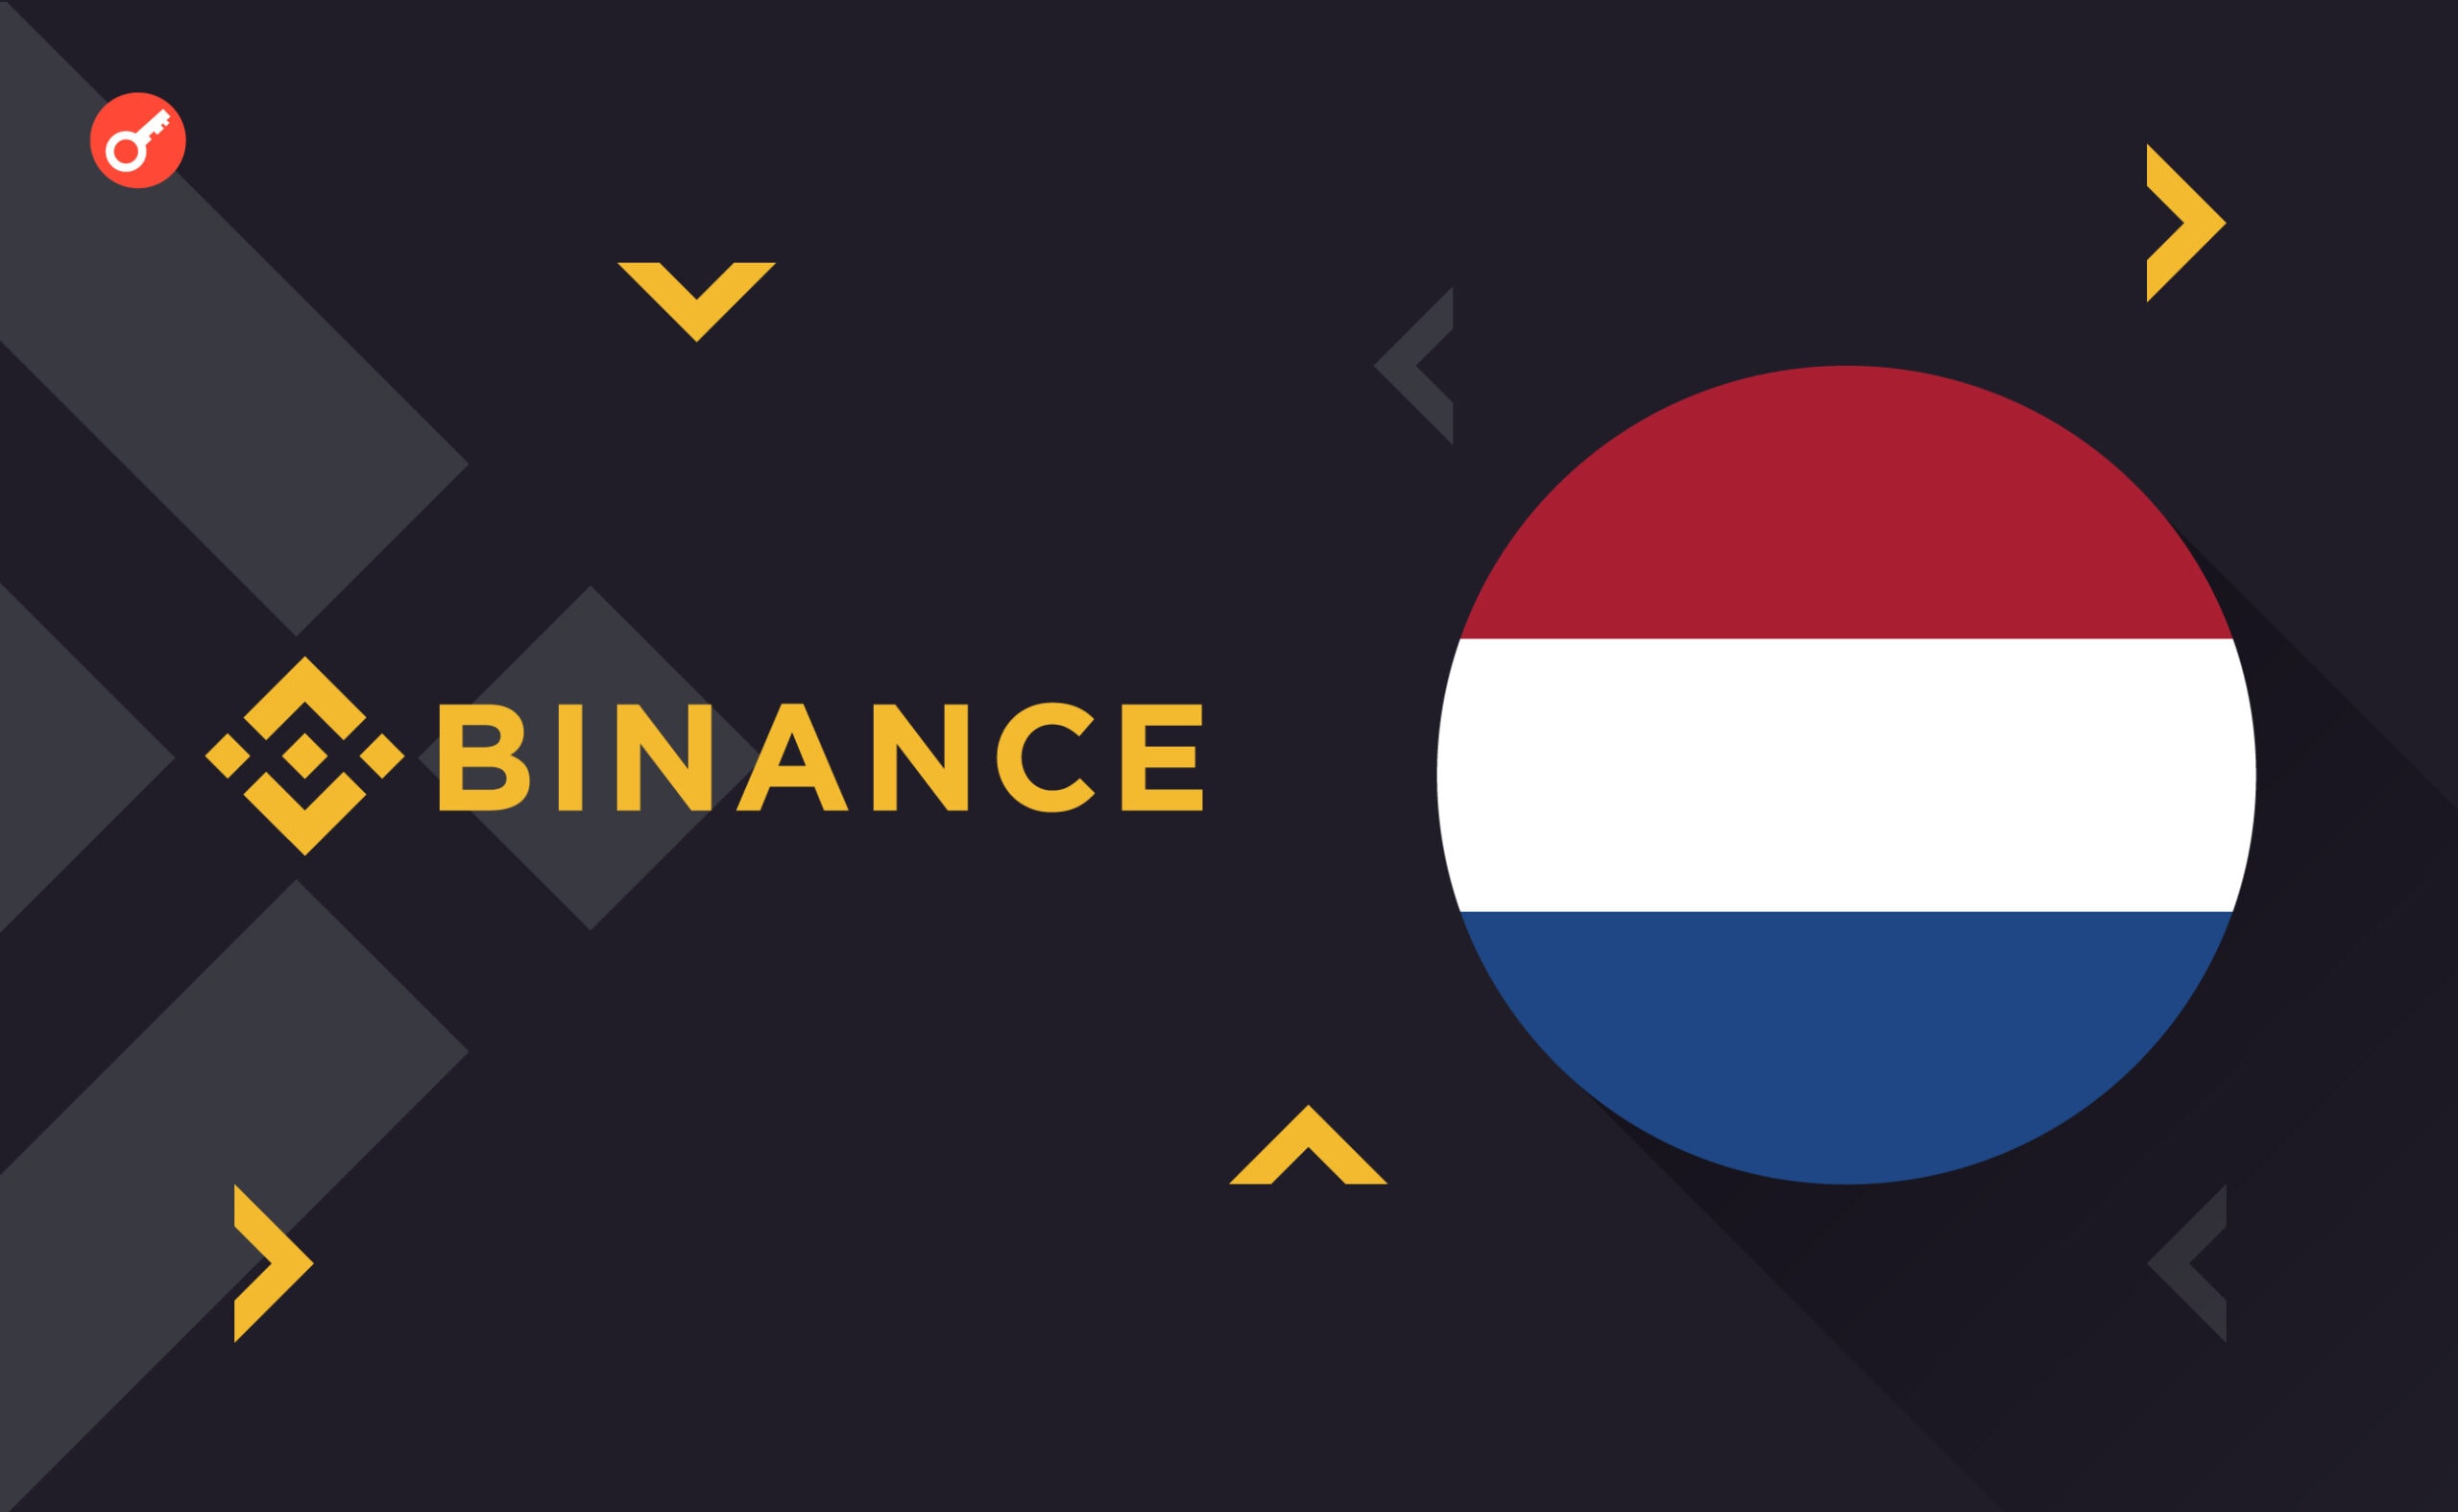 Binance може повернутися в Нідерланди після впровадження MiCA — De Nederlandsche Bank. Головний колаж новини.